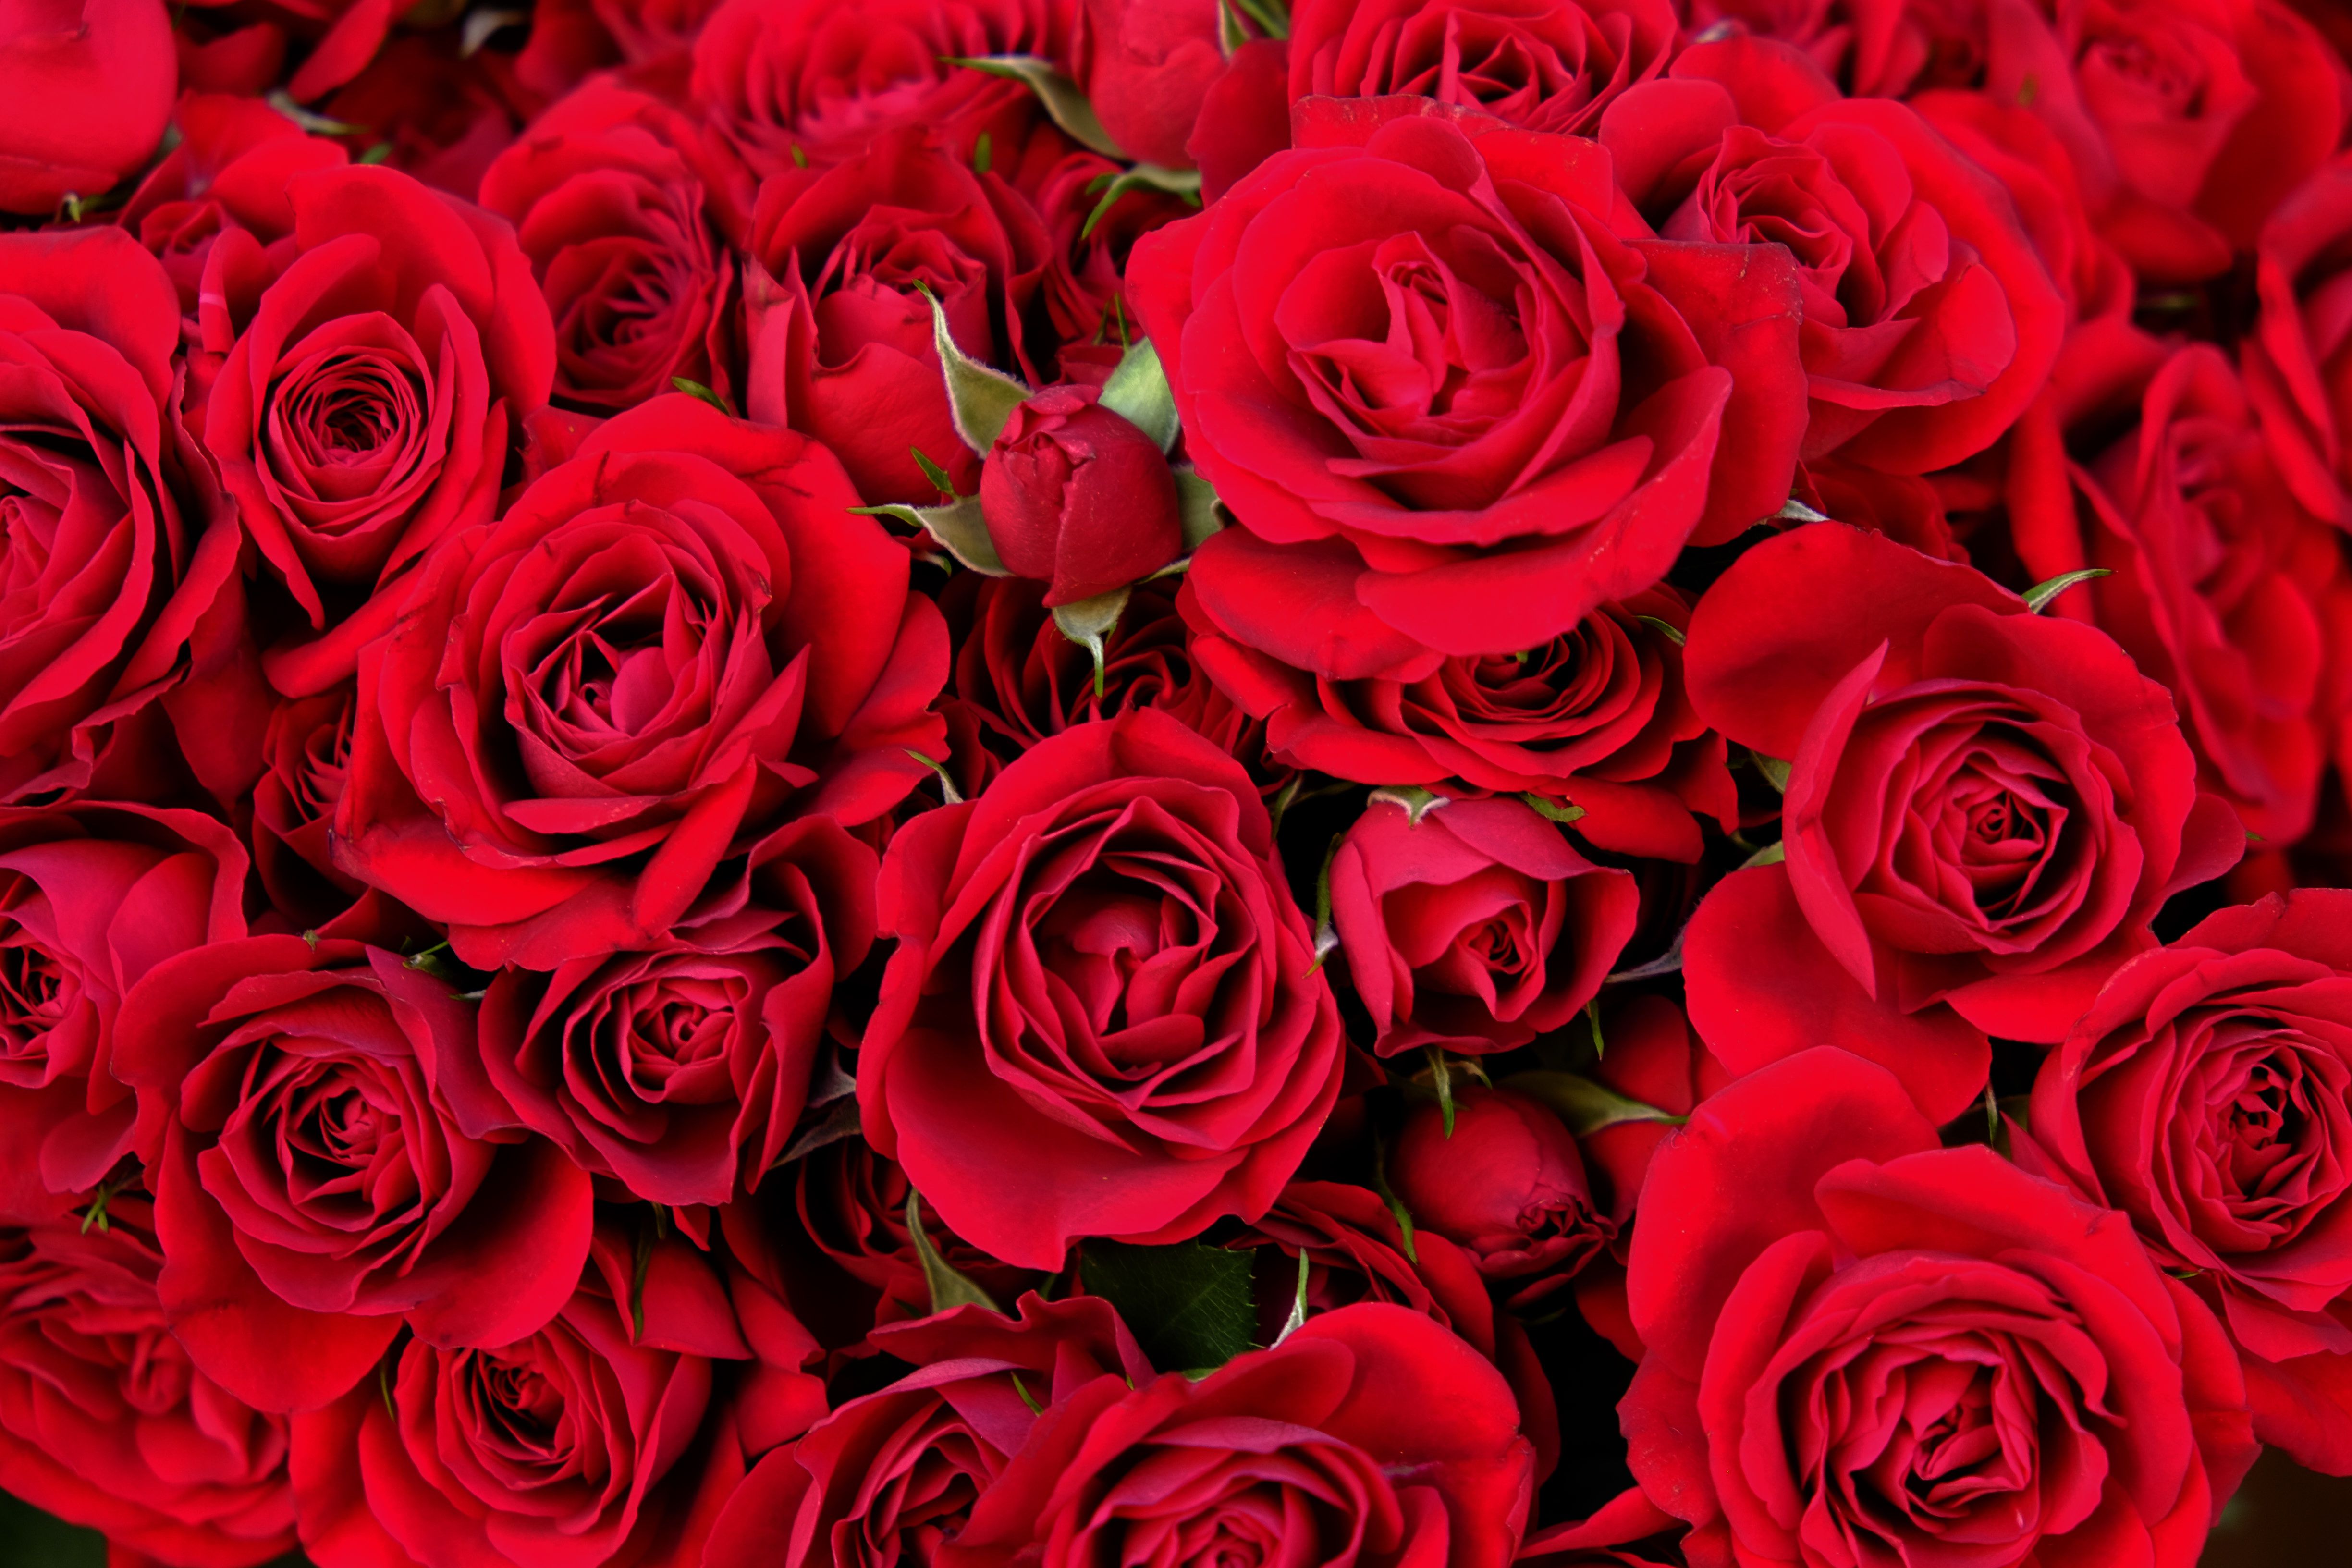 rose wallpaper pic,flower,rose,garden roses,flowering plant,red